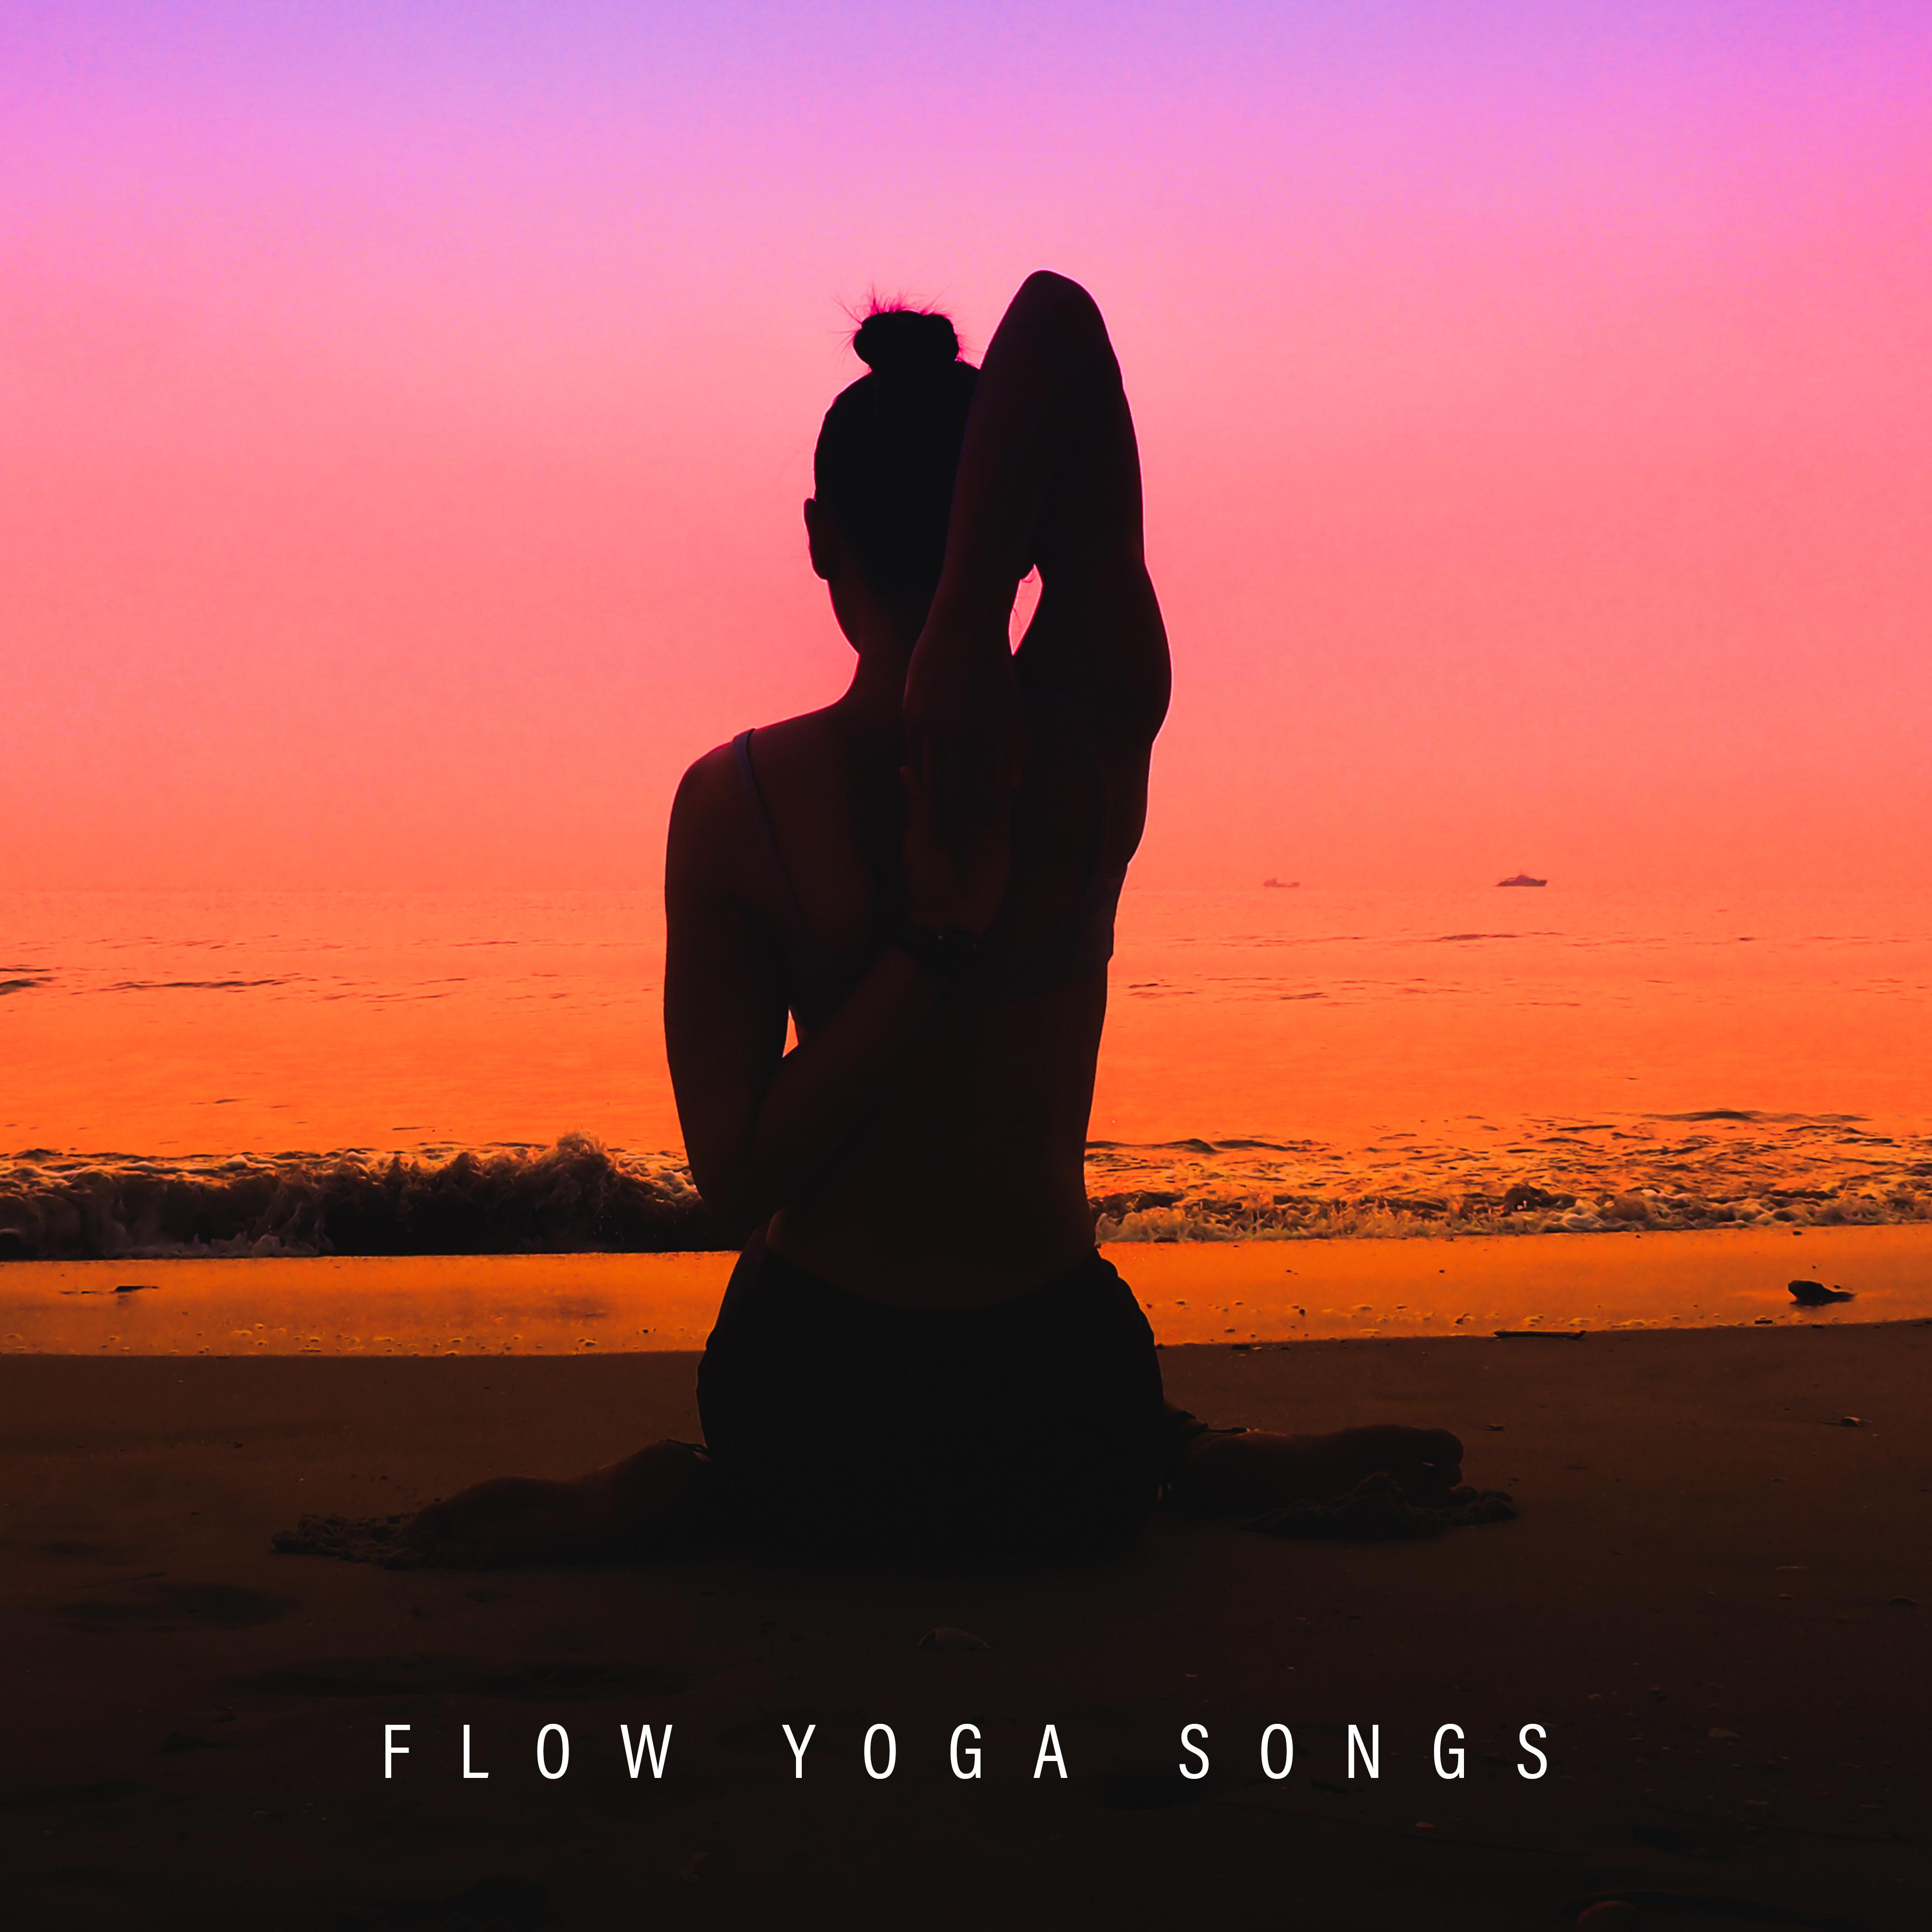 Flow Yoga Songs